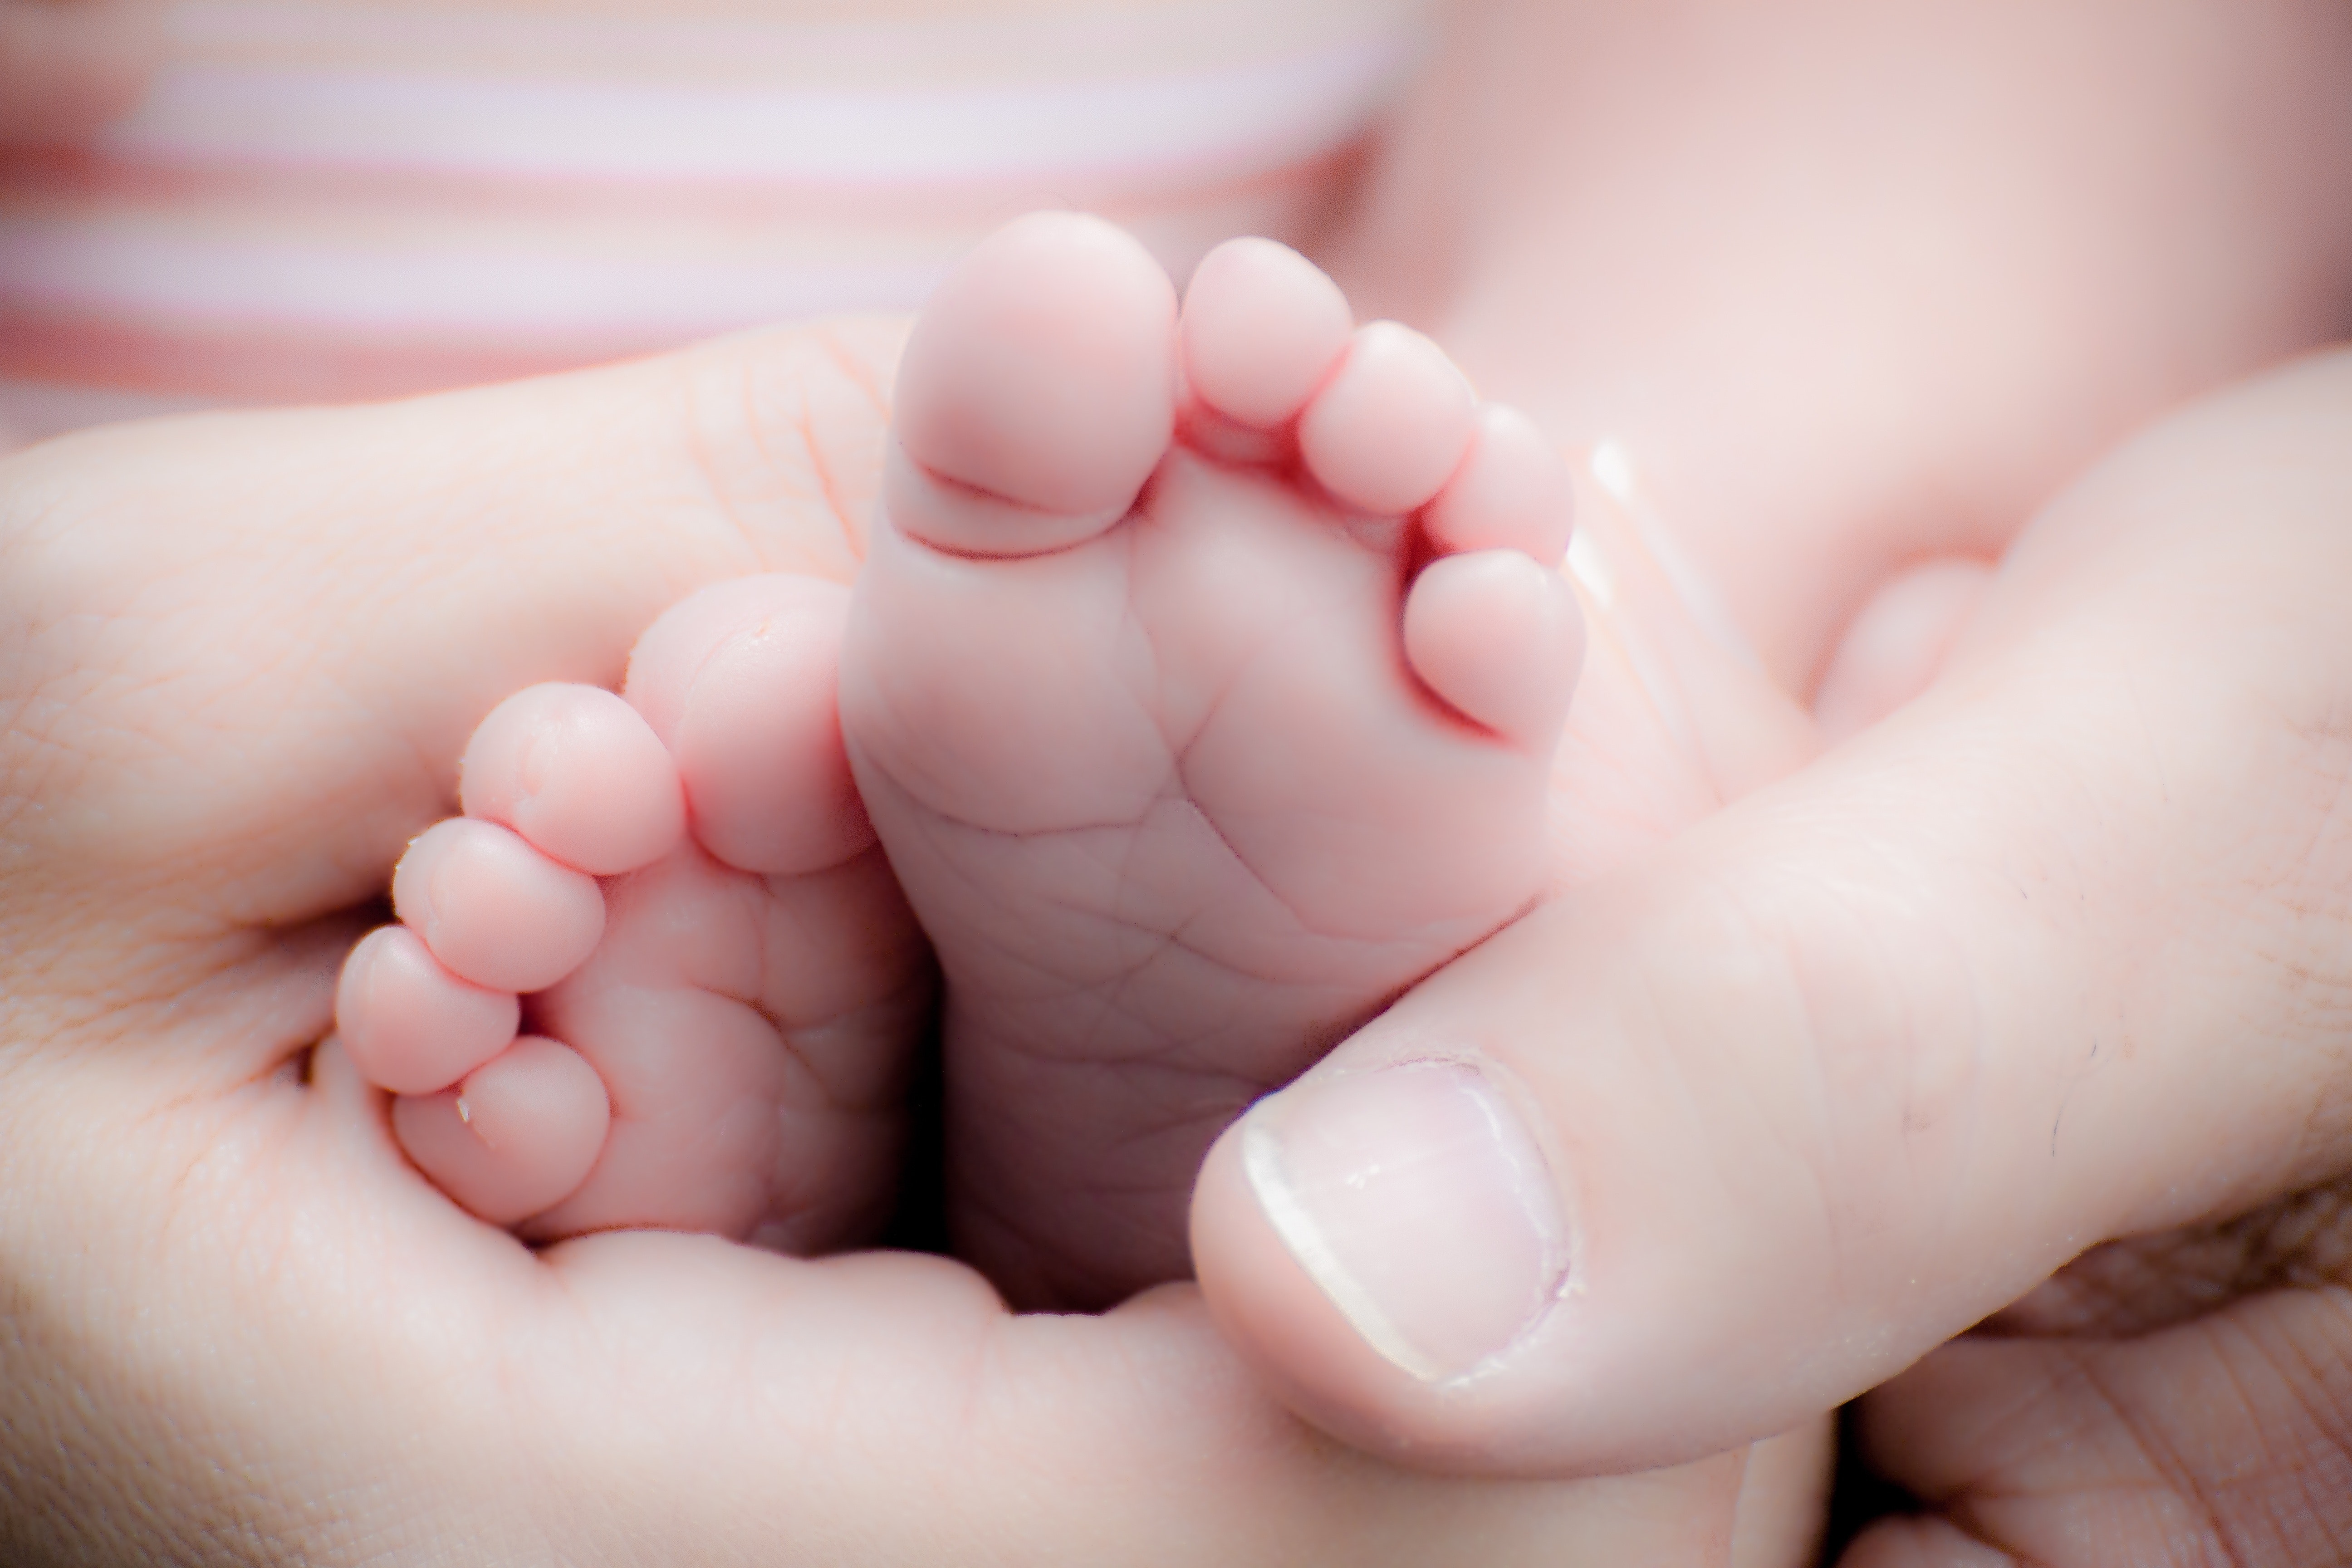 PRO-LIFE-adorable-baby-baby-feet-266011-- Image from Pixabay.com via Pexels.com